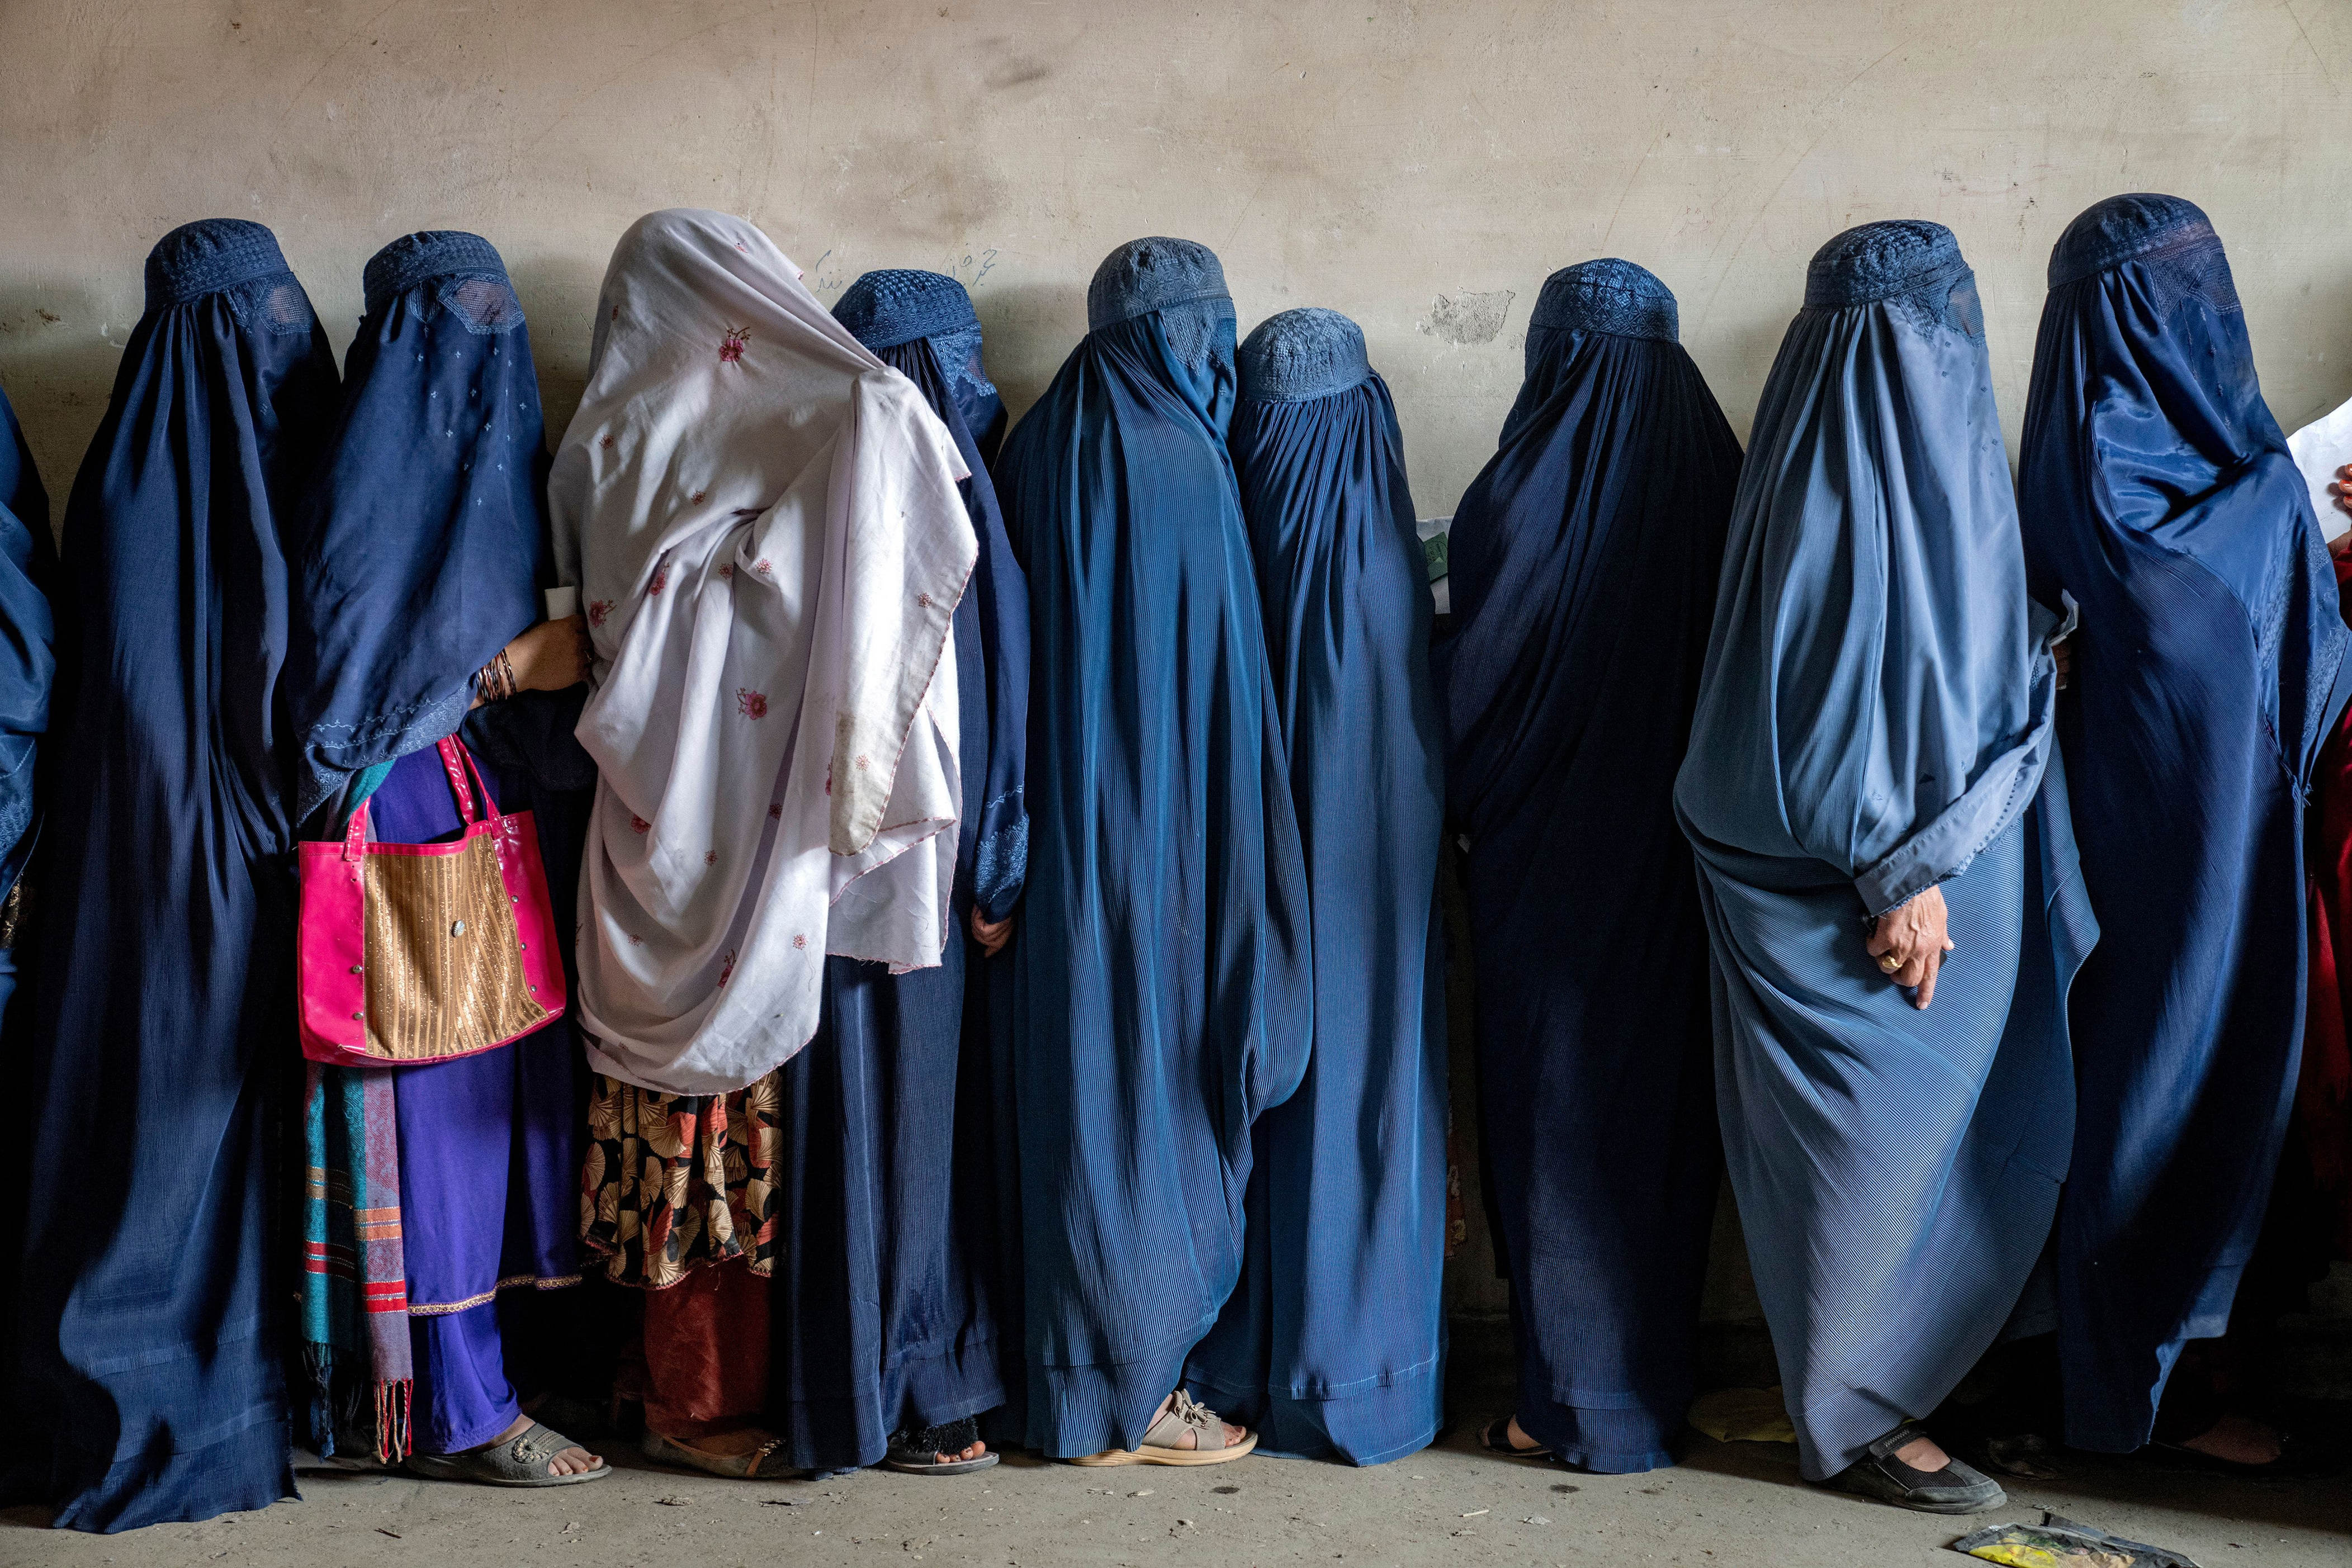 asyl für afghaninnen: bürgerliche richter korrigieren den kurs